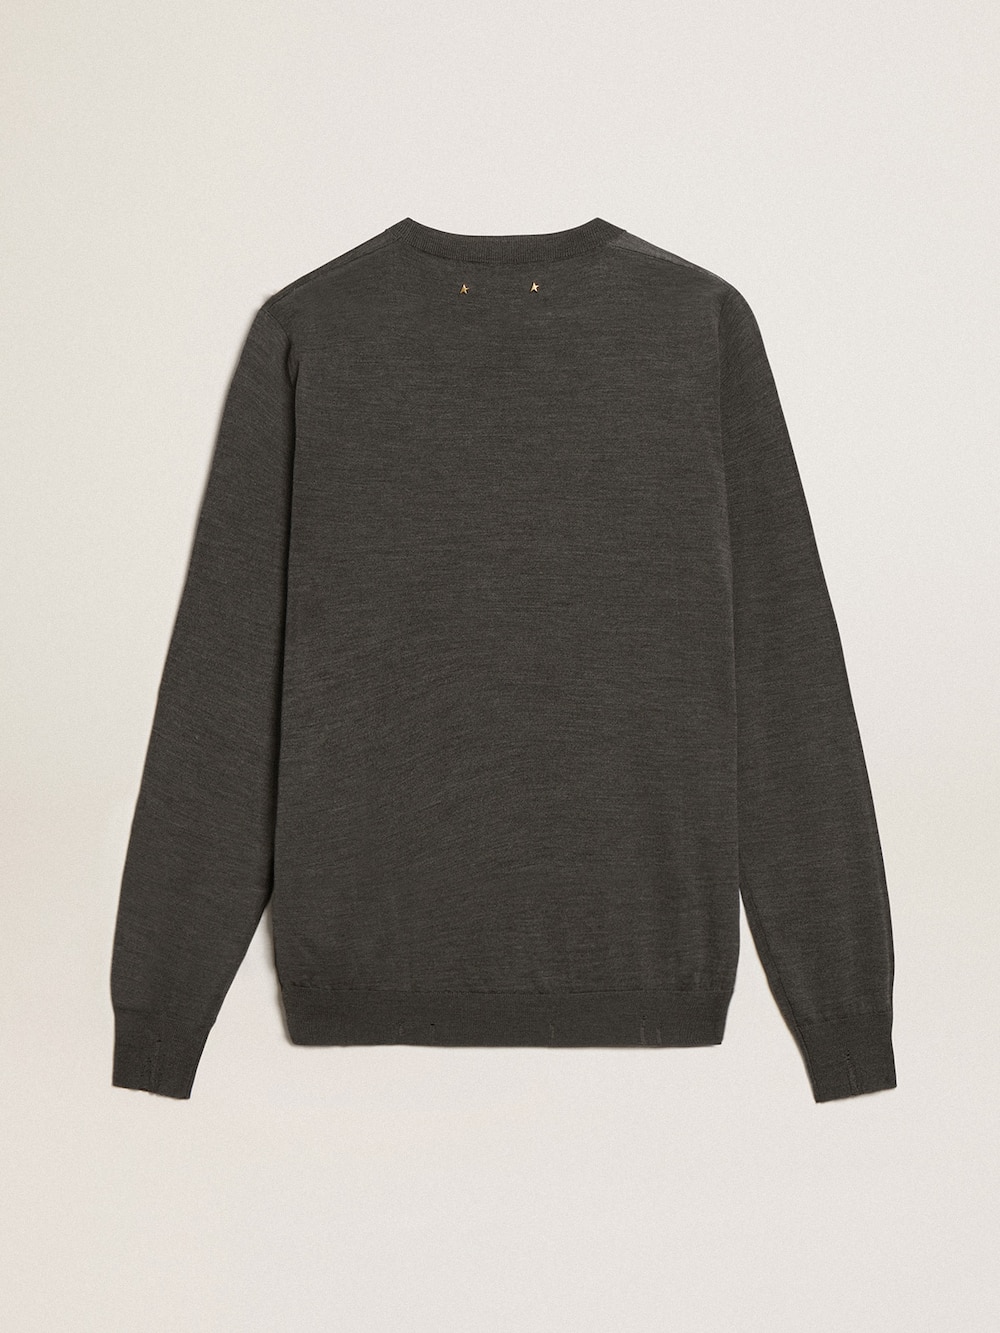 Golden Goose - Men's round-neck sweater in dark gray mélange wool in 